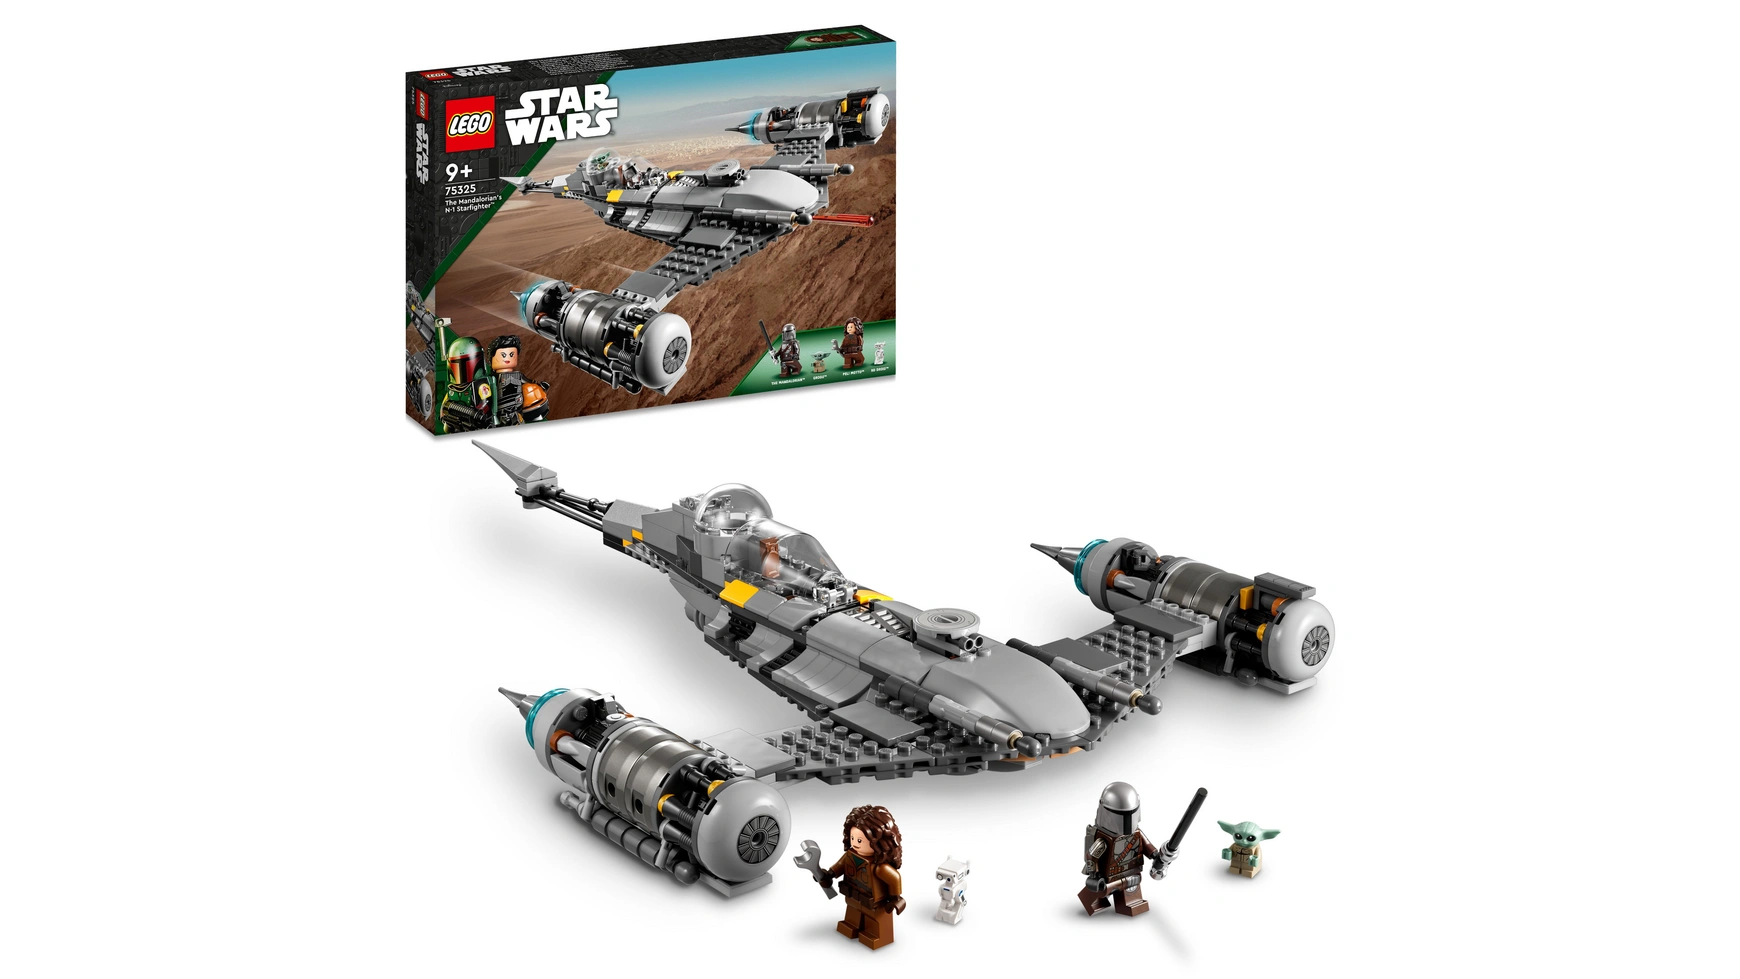 конструктор lego star wars звездолет бобы фетта 75312 Lego Star Wars Набор Звездный истребитель Мандалорца Н-1